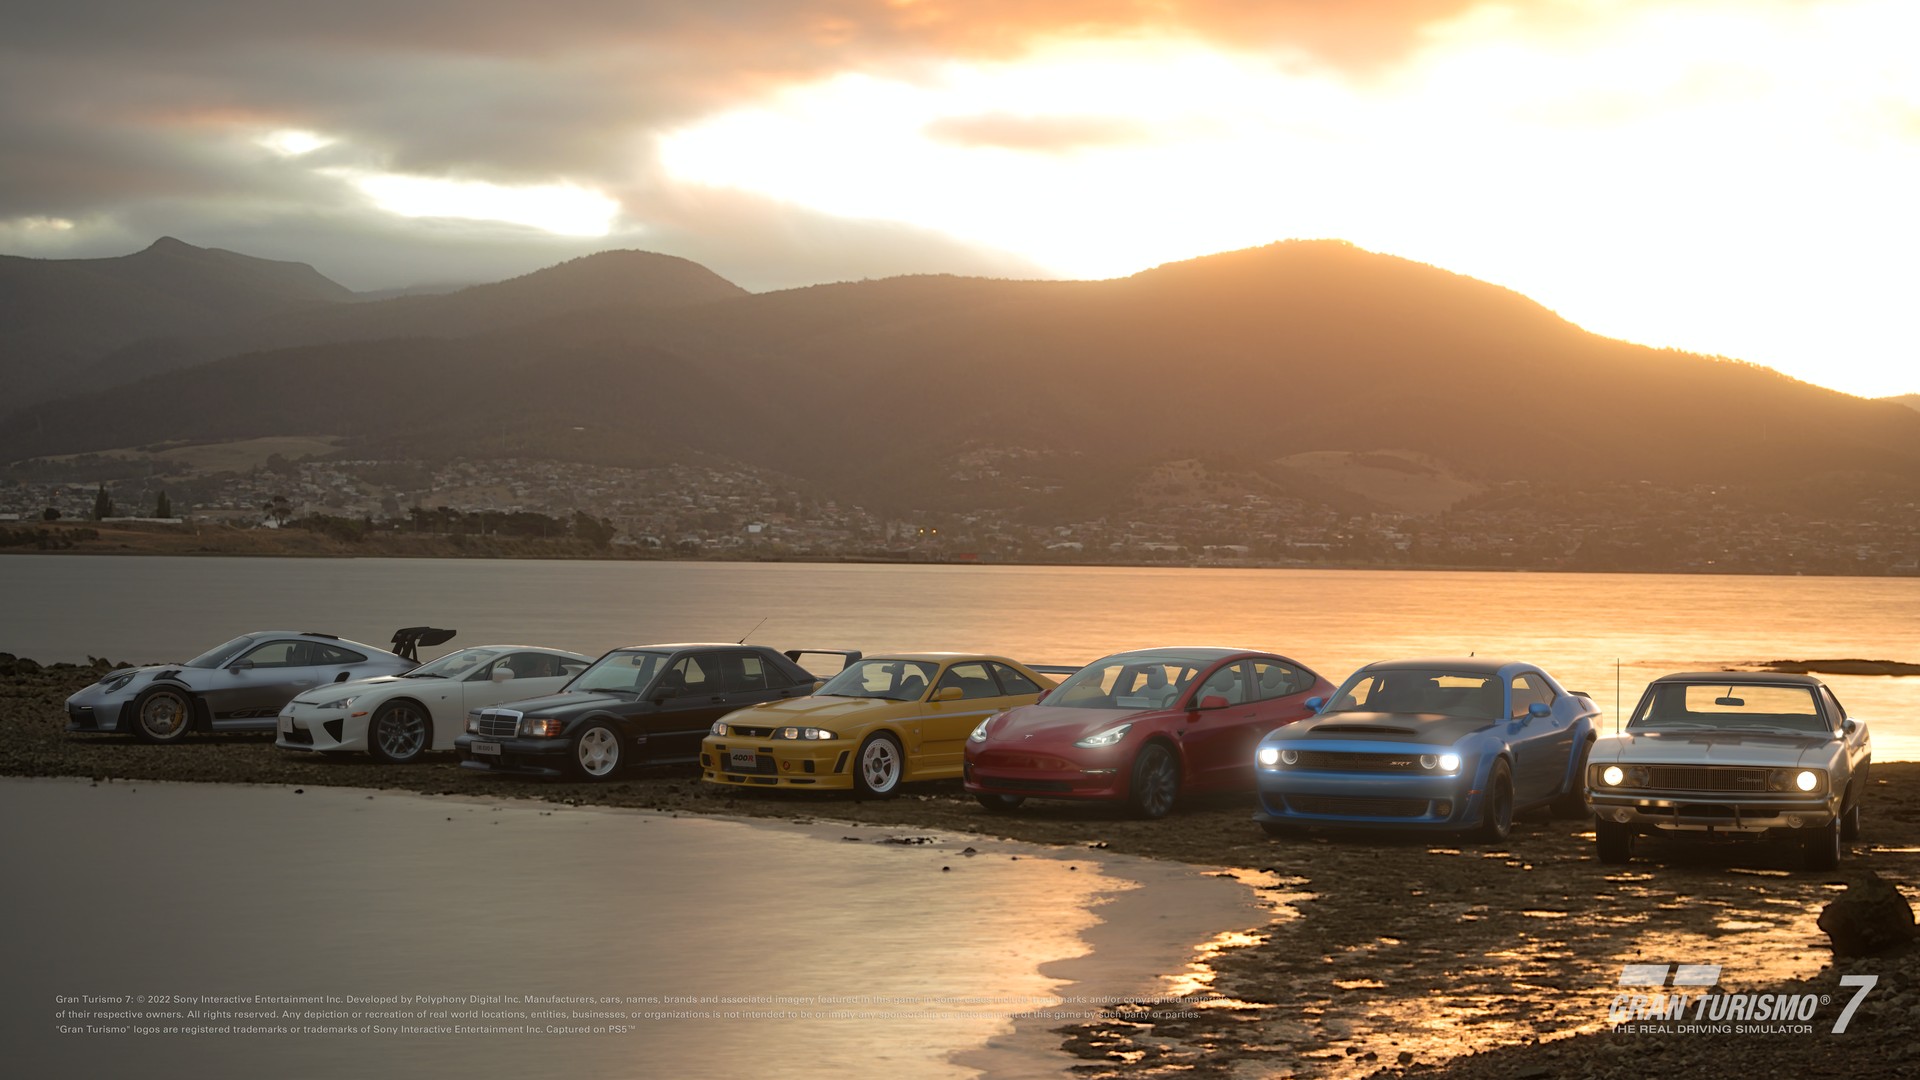 Gran Turismo 7 tem novos carros, pistas e desafios com Sophy